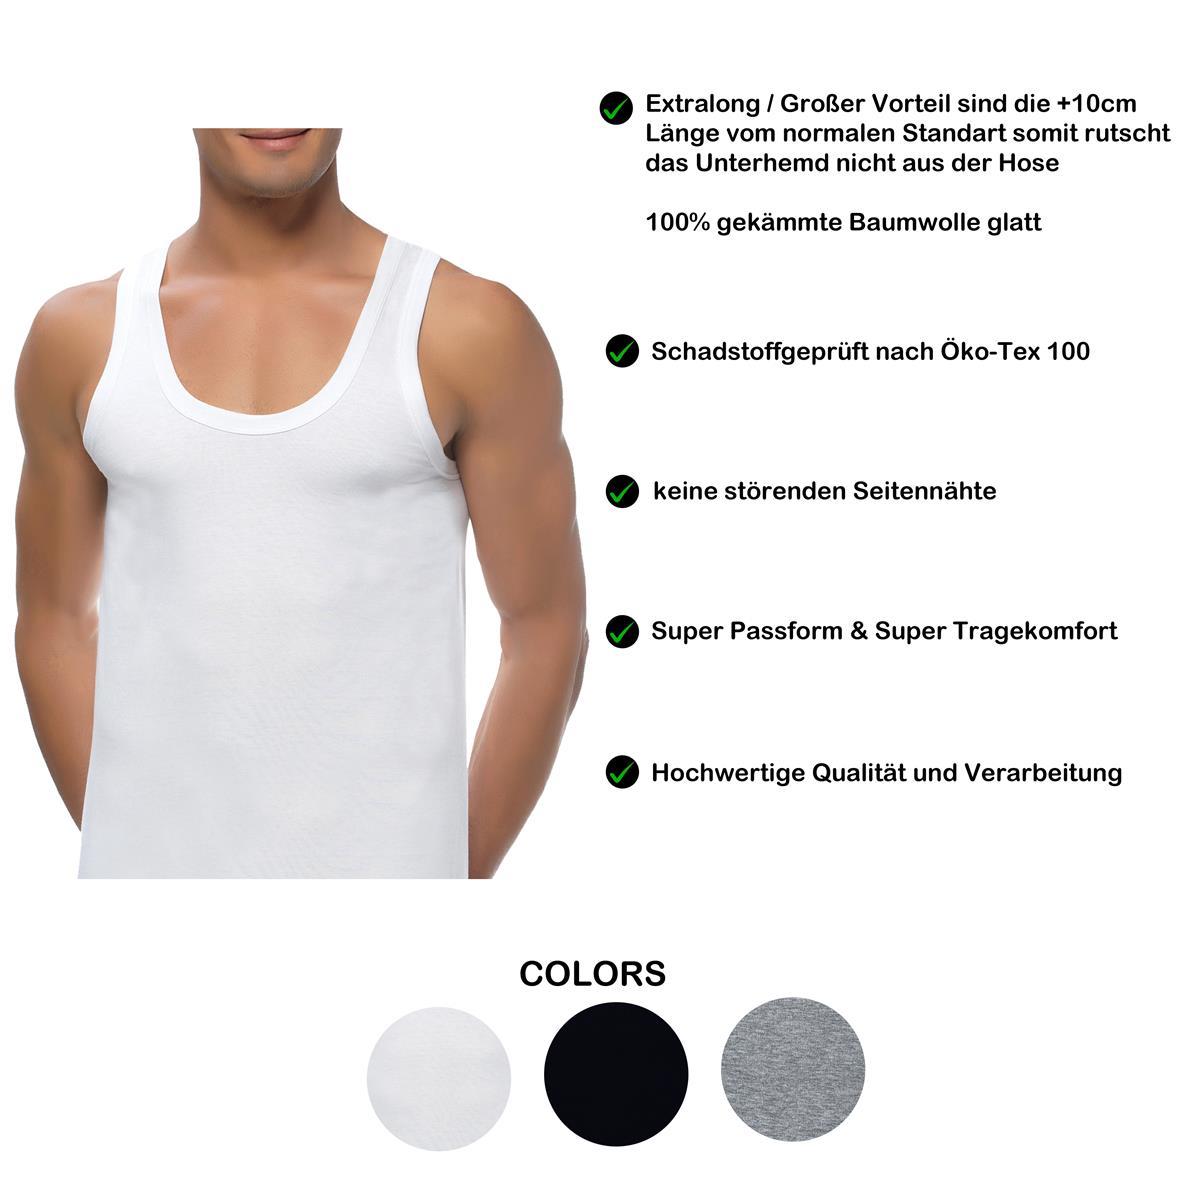 4 Herren Unterhemden extralang long 100% Baumwolle Feinripp glatt Achselhemd Weiss Schwarz 5-2 S-5XL